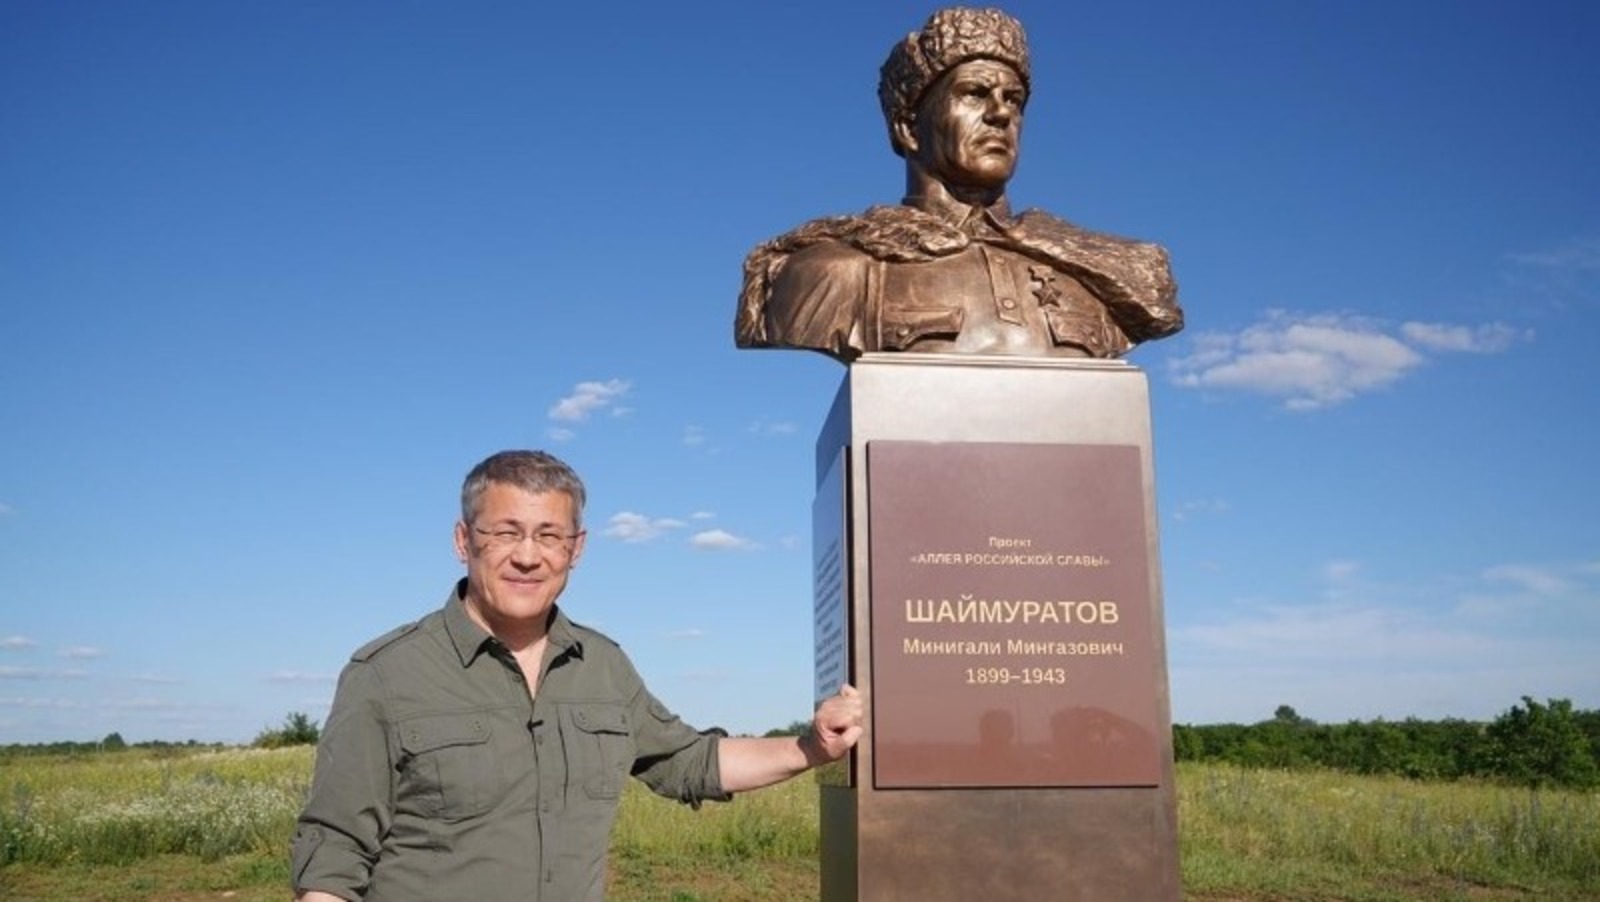 В Луганской народной республике открылся бюст генералу Минигали Шаймуратову